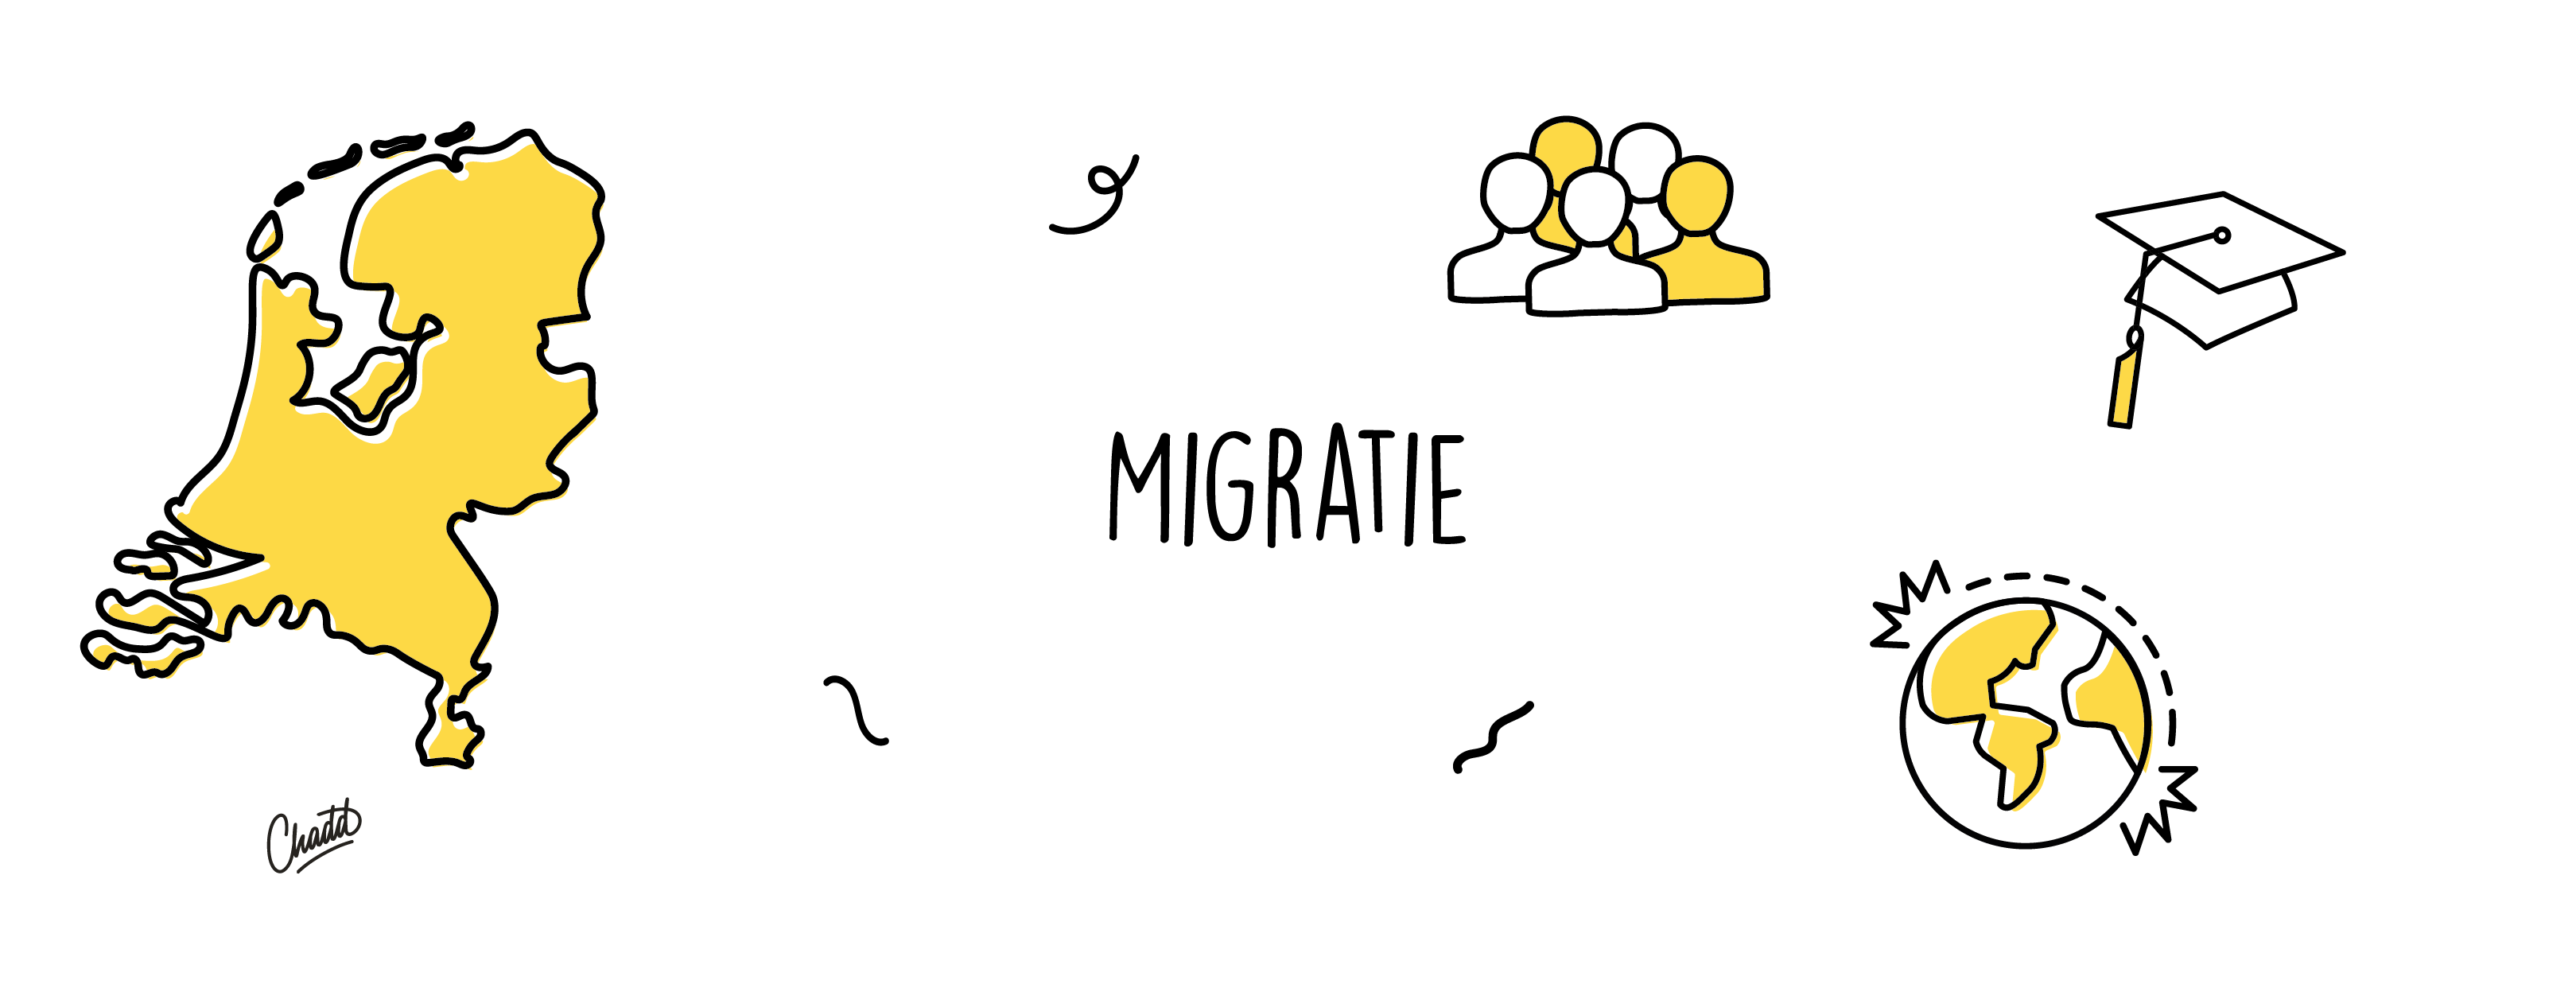 Migratie